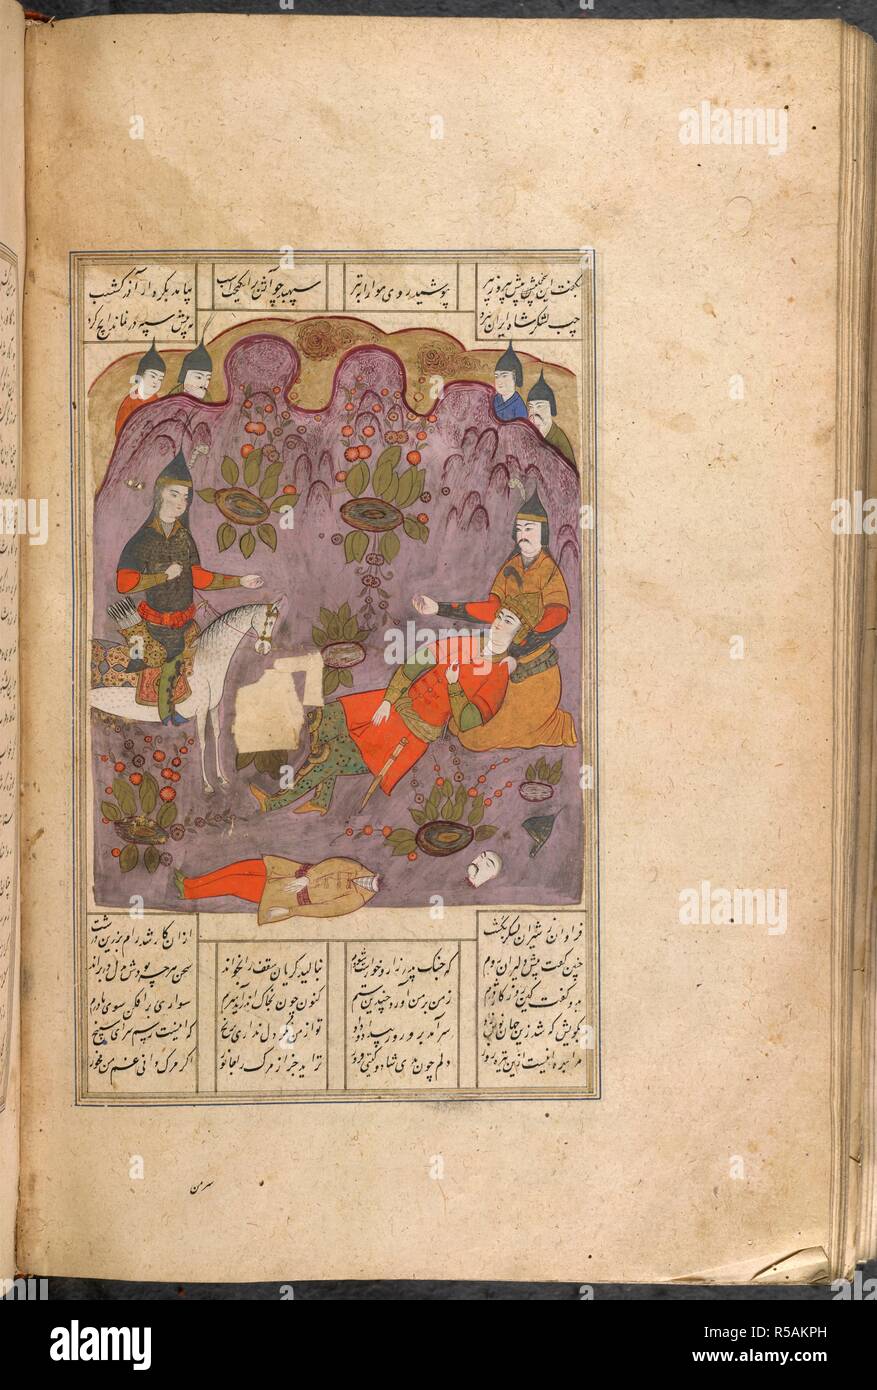 La sconfitta e la morte di Nushzad. Shahnama di Firdawsi, con 63 miniature. 1604. La sconfitta e la morte di Nushzad, figlio di Nushirwan a mani di quest'ultimo generale, Barzin. Provinciale. 18 da 15,5 cm. Acquerello opaco. Safavid/Isfahan stile. Immagine presa da Shahnama di Firdawsi, con 63 miniature. Originariamente pubblicato/prodotto in 1604. . Fonte: i.o. ISLAMIC 966, f.428v. V.o. persiano. Foto Stock